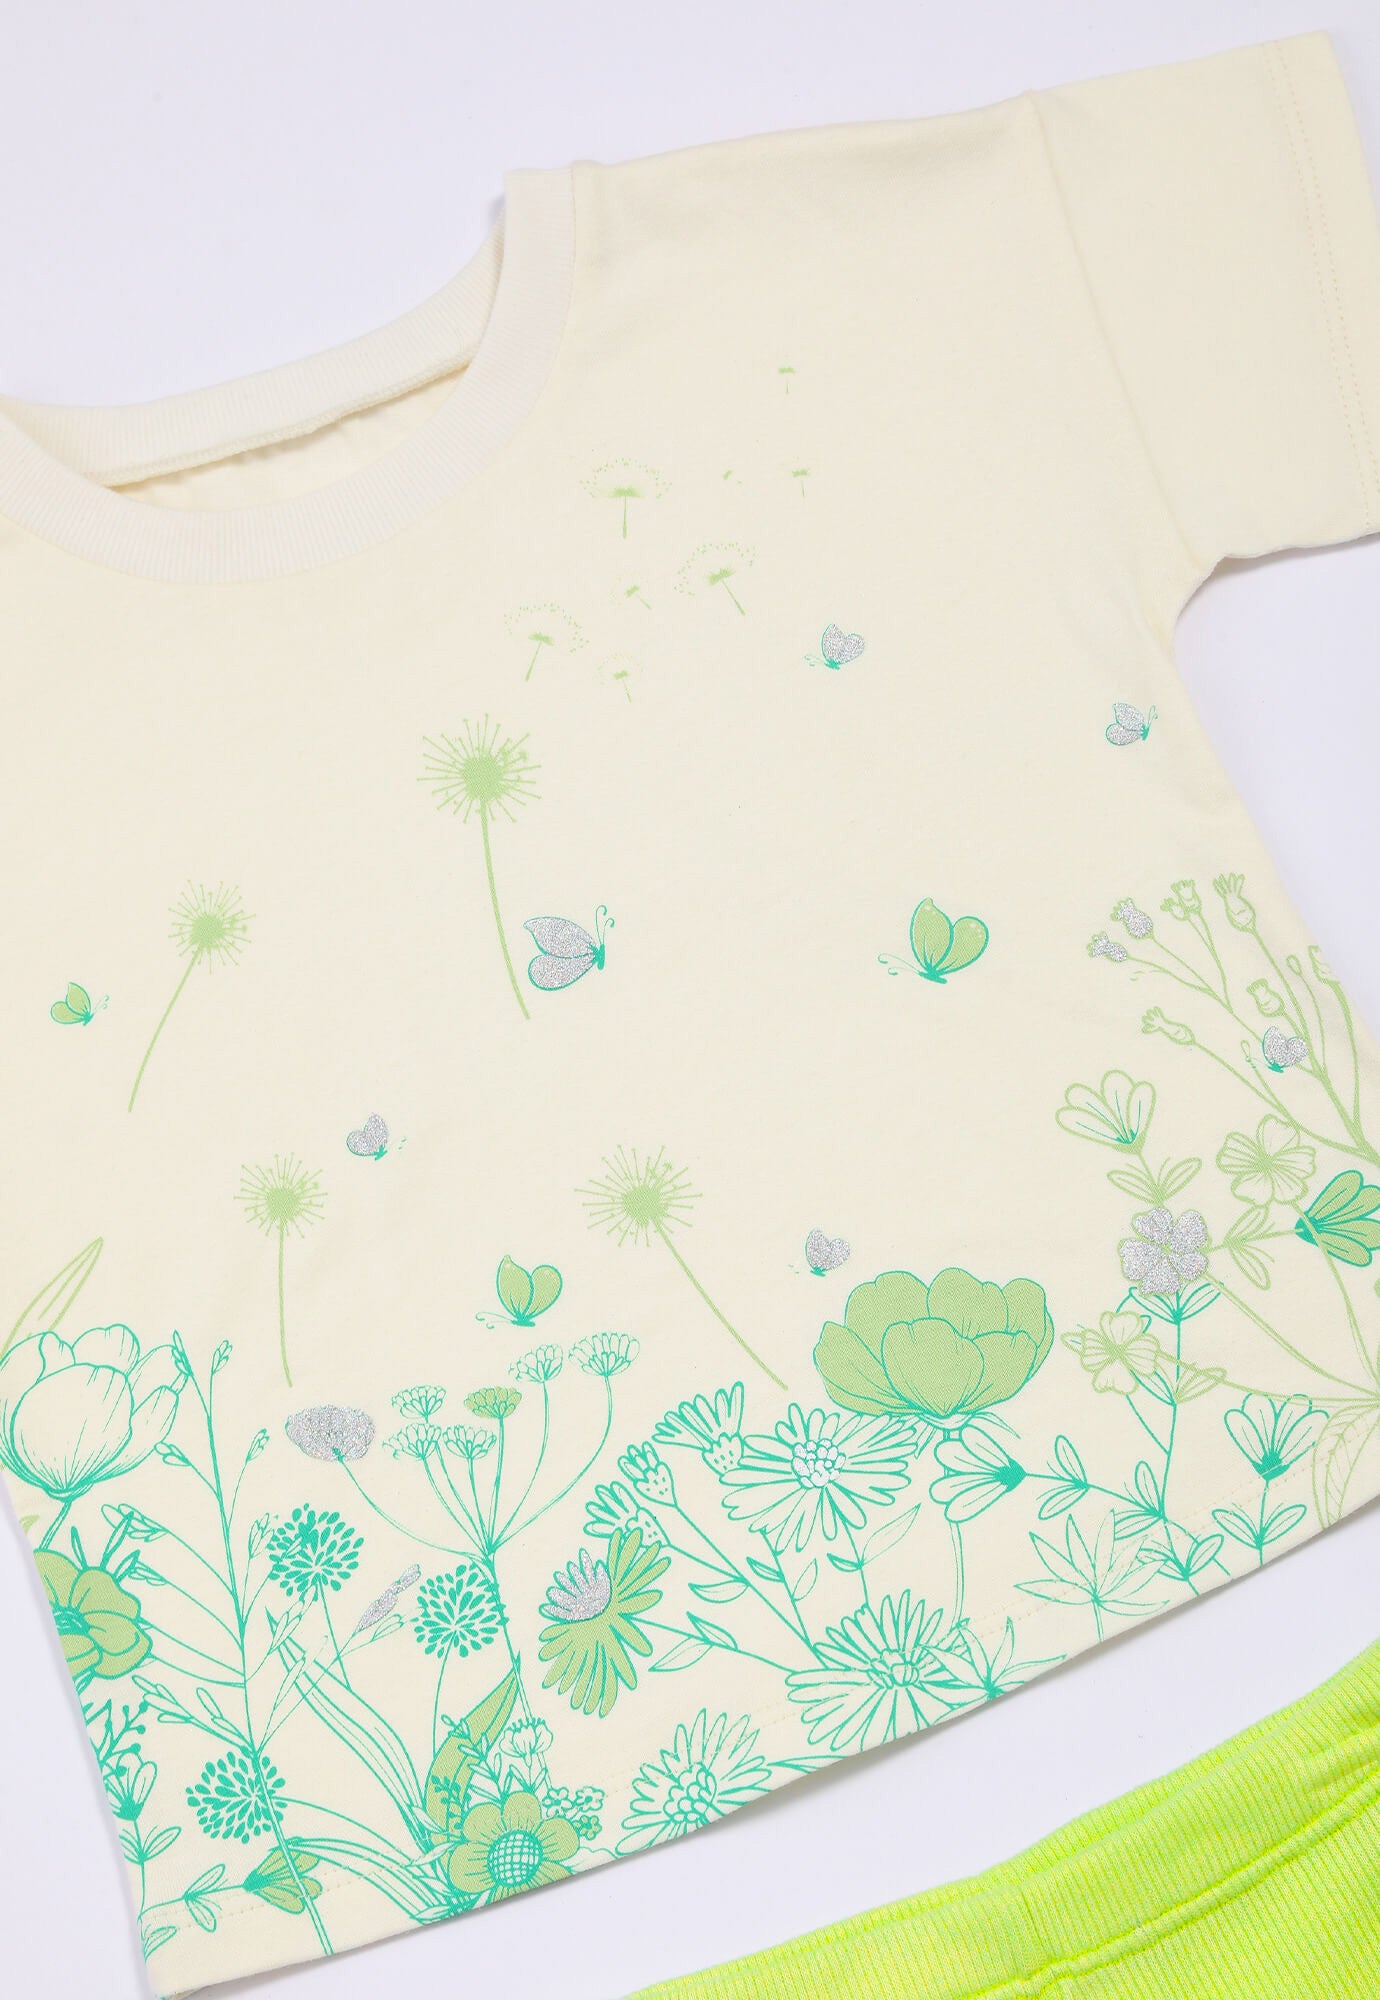 Conjunto de camiseta estampada manga corta y short verde para bebé niña